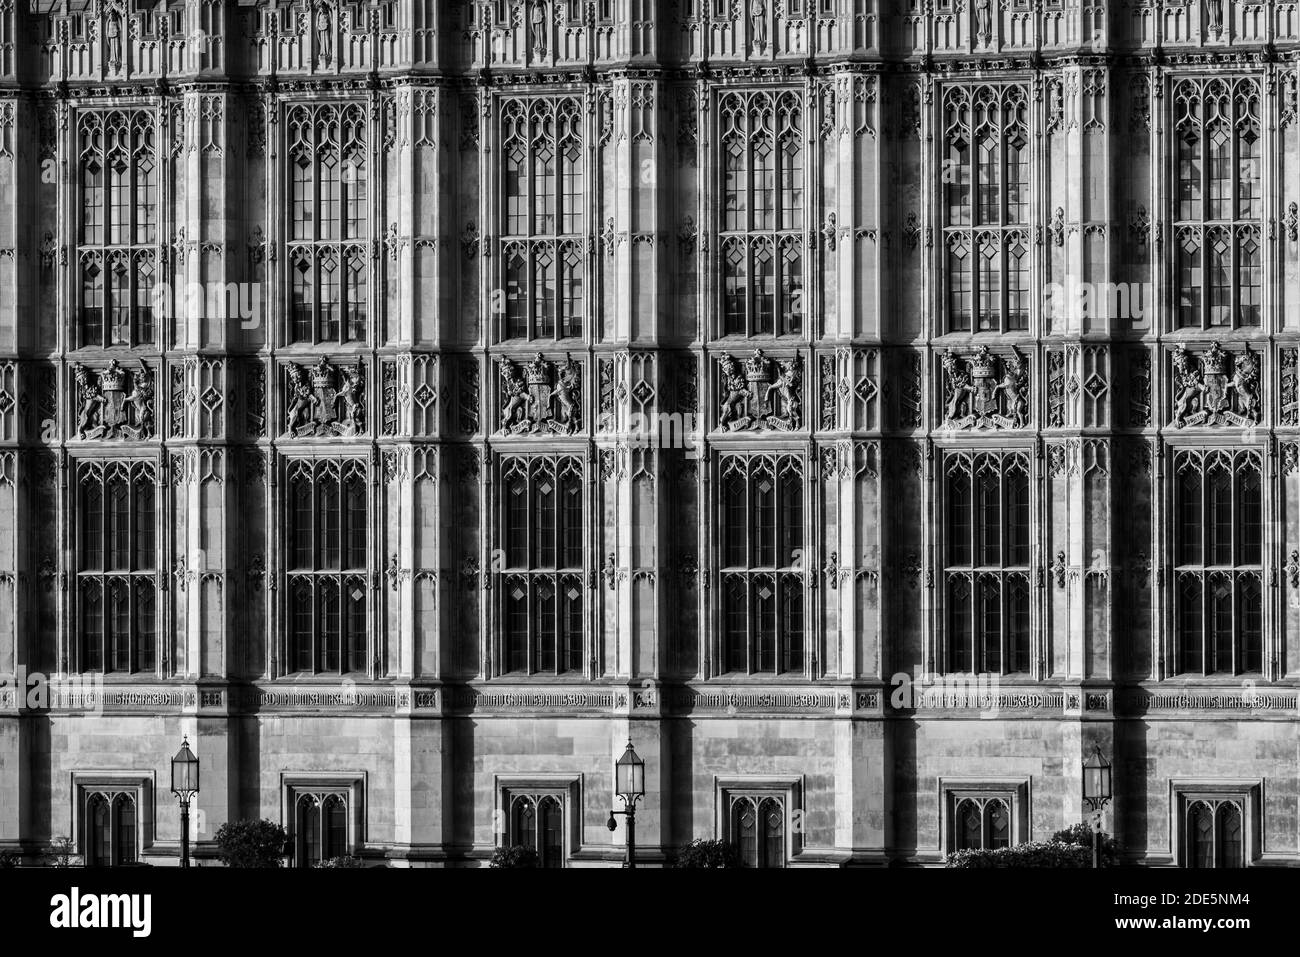 Schwarz-weiße Houses of Parliament, das ikonische Londoner Gebäude und Wahrzeichen der Touristenattraktion während der Sperrung des Coronavirus Covid-19 Pandemievirus in England, Großbritannien Stockfoto